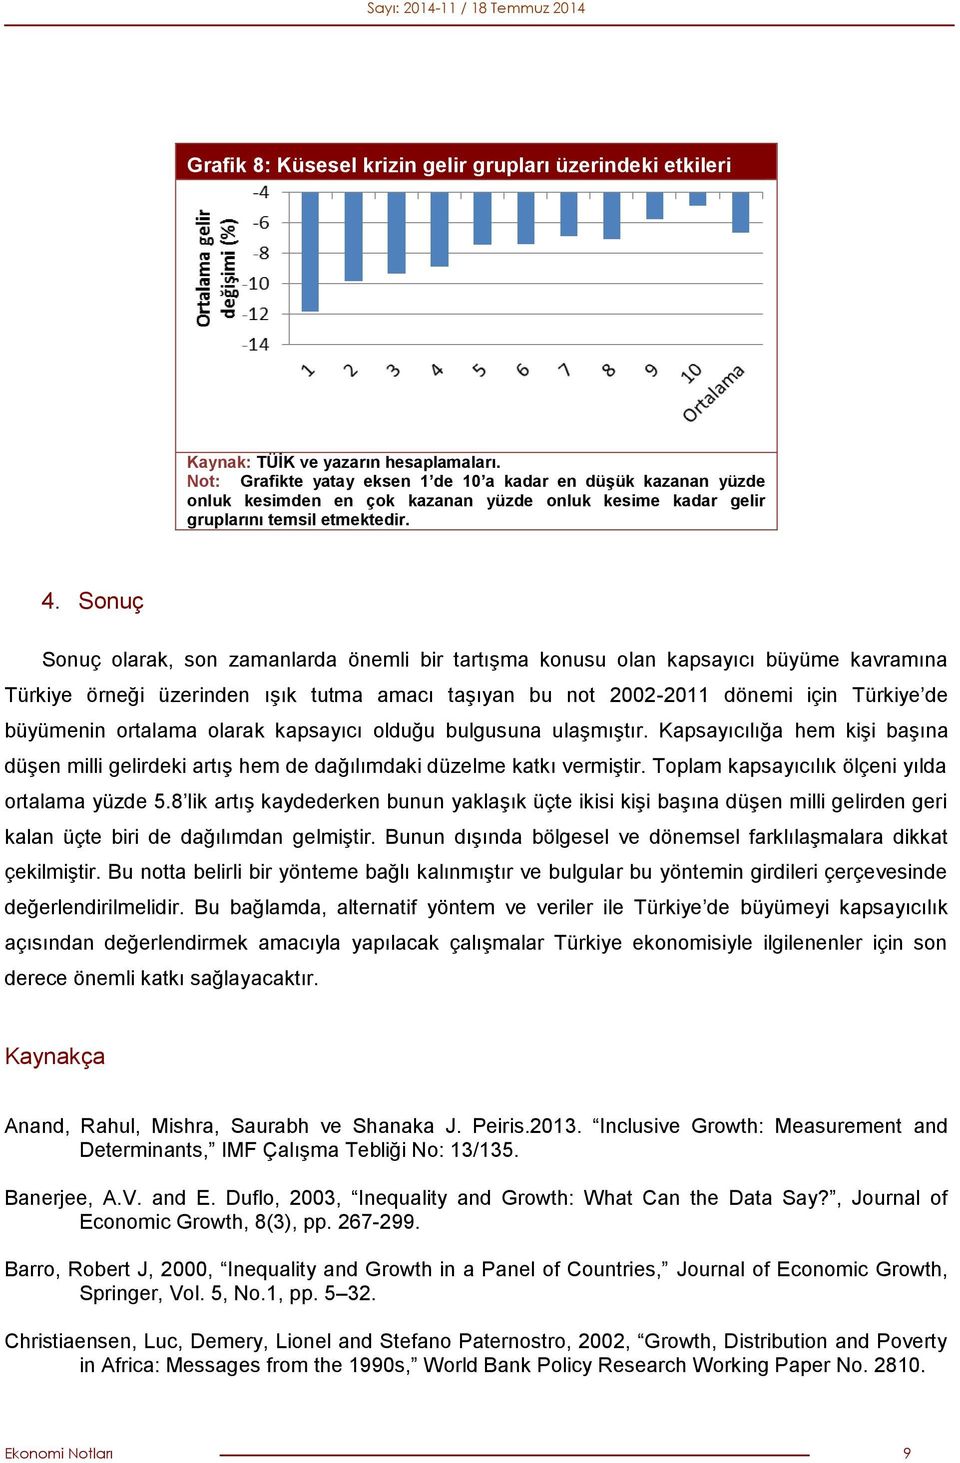 Sonuç Sonuç olarak, son zamanlarda önemli bir tartışma konusu olan kapsayıcı büyüme kavramına Türkiye örneği üzerinden ışık tutma amacı taşıyan bu not 2002-2011 dönemi için Türkiye de büyümenin